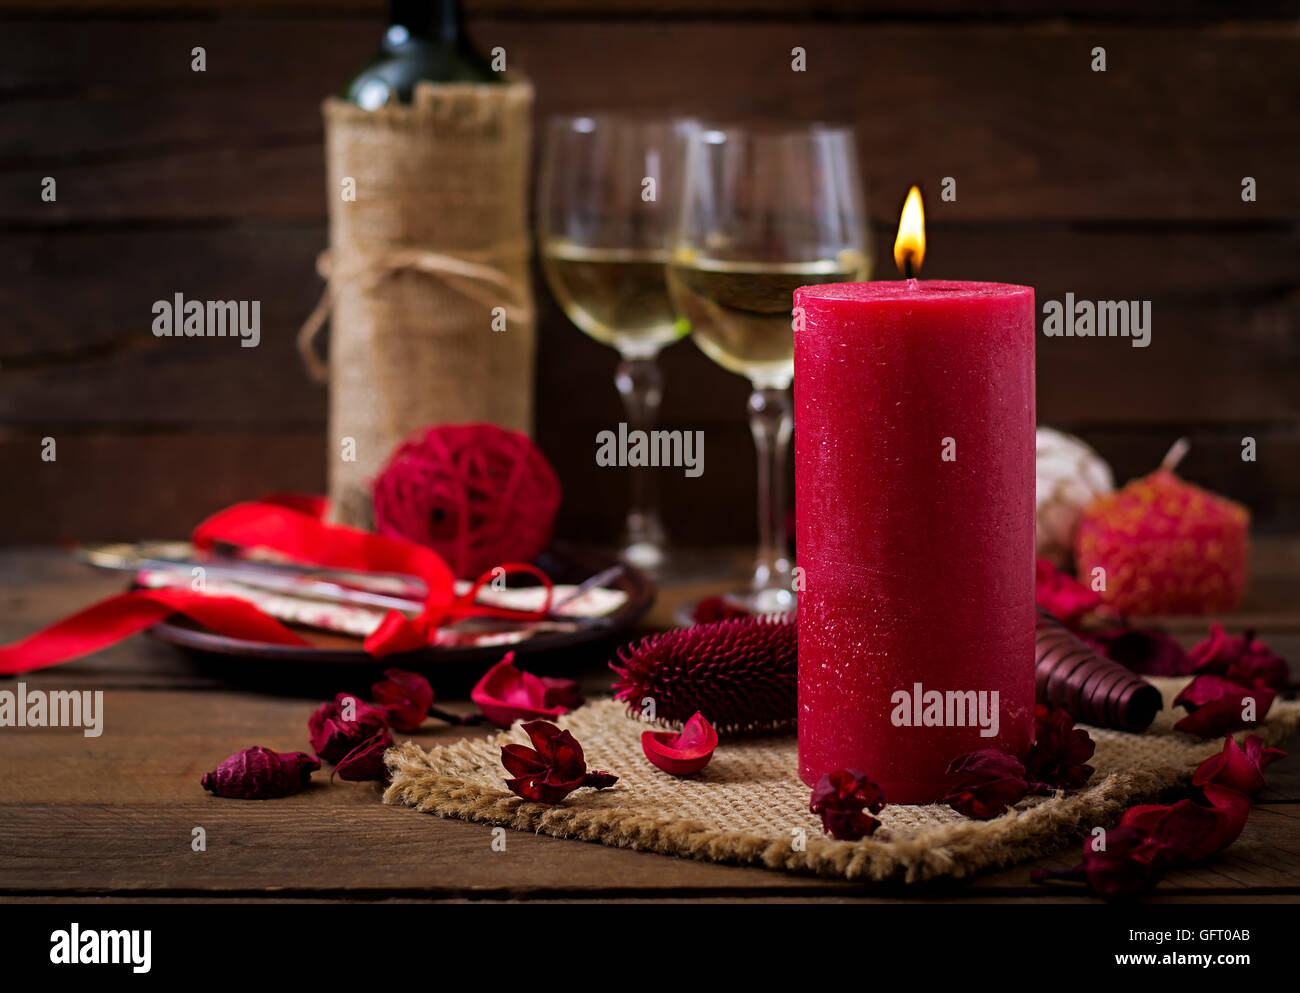 Candele Romantiche Immagini e Fotos Stock - Alamy